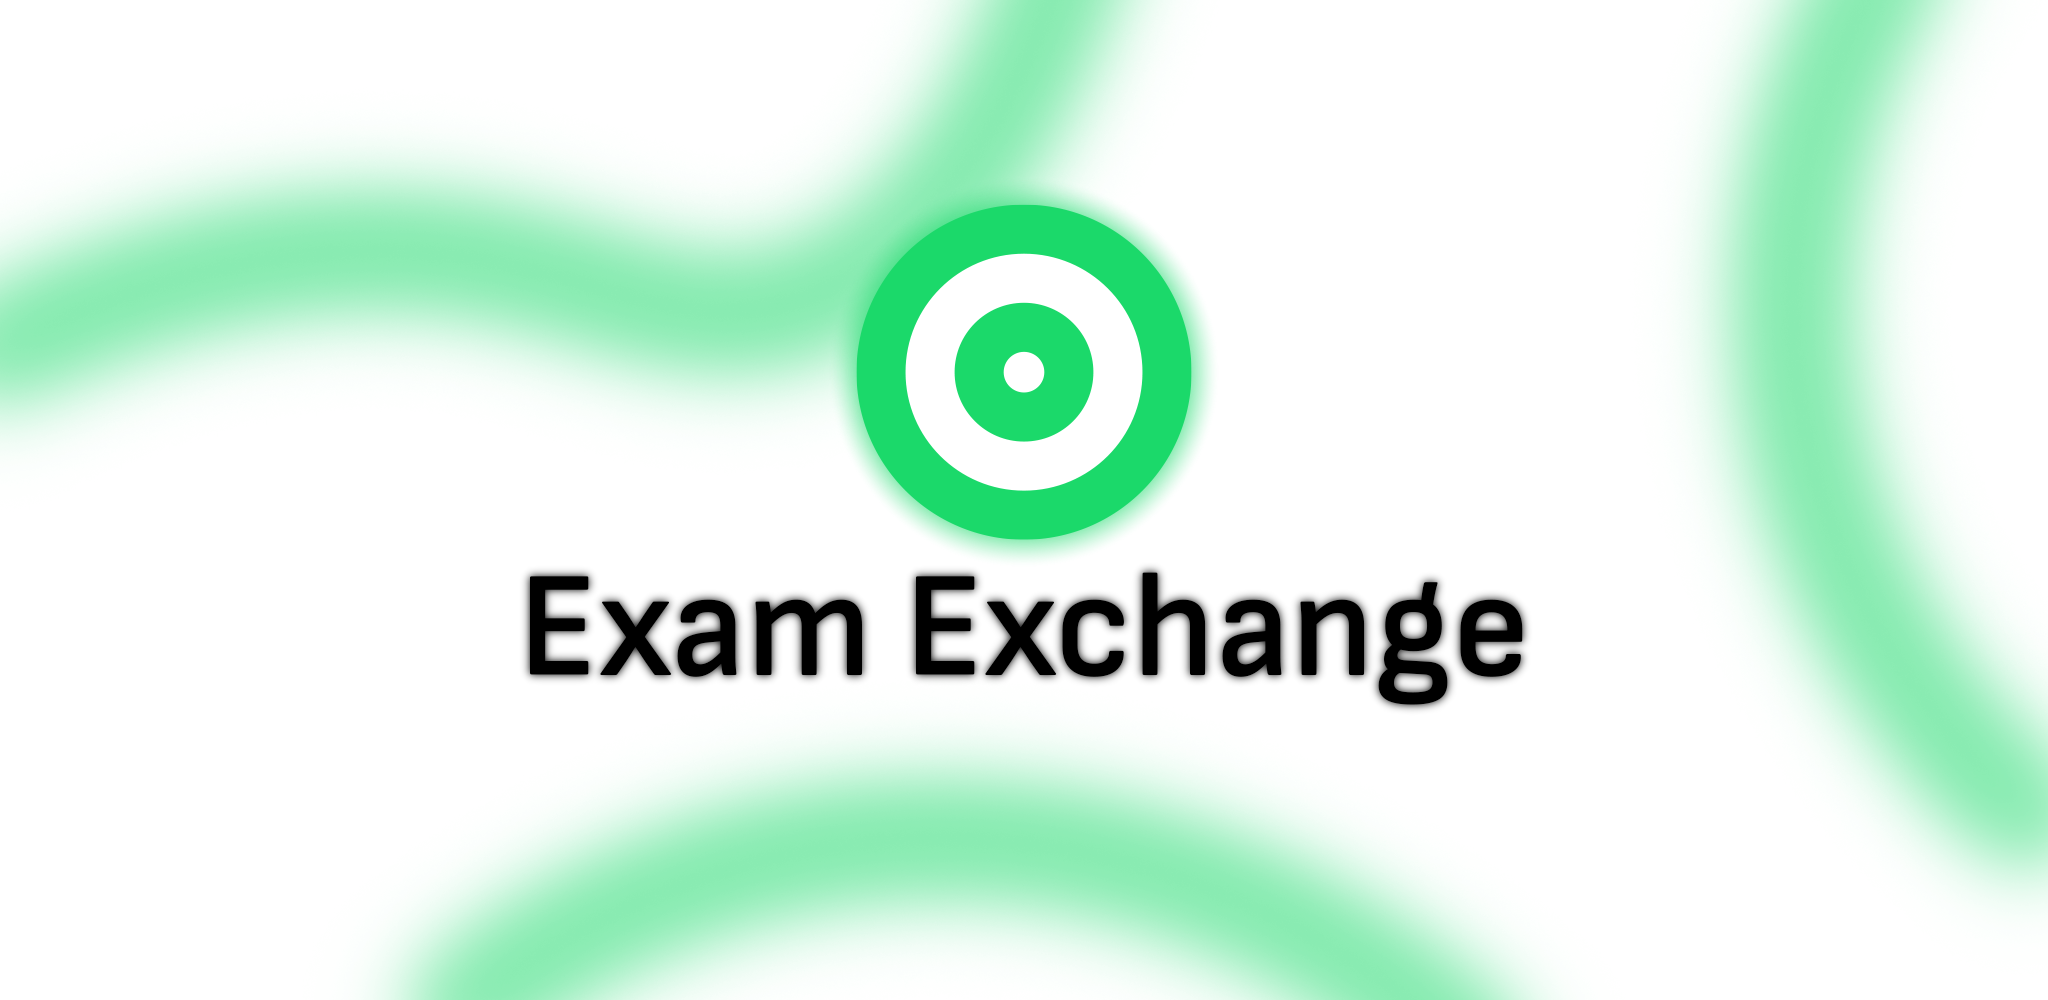 Exam Exchange